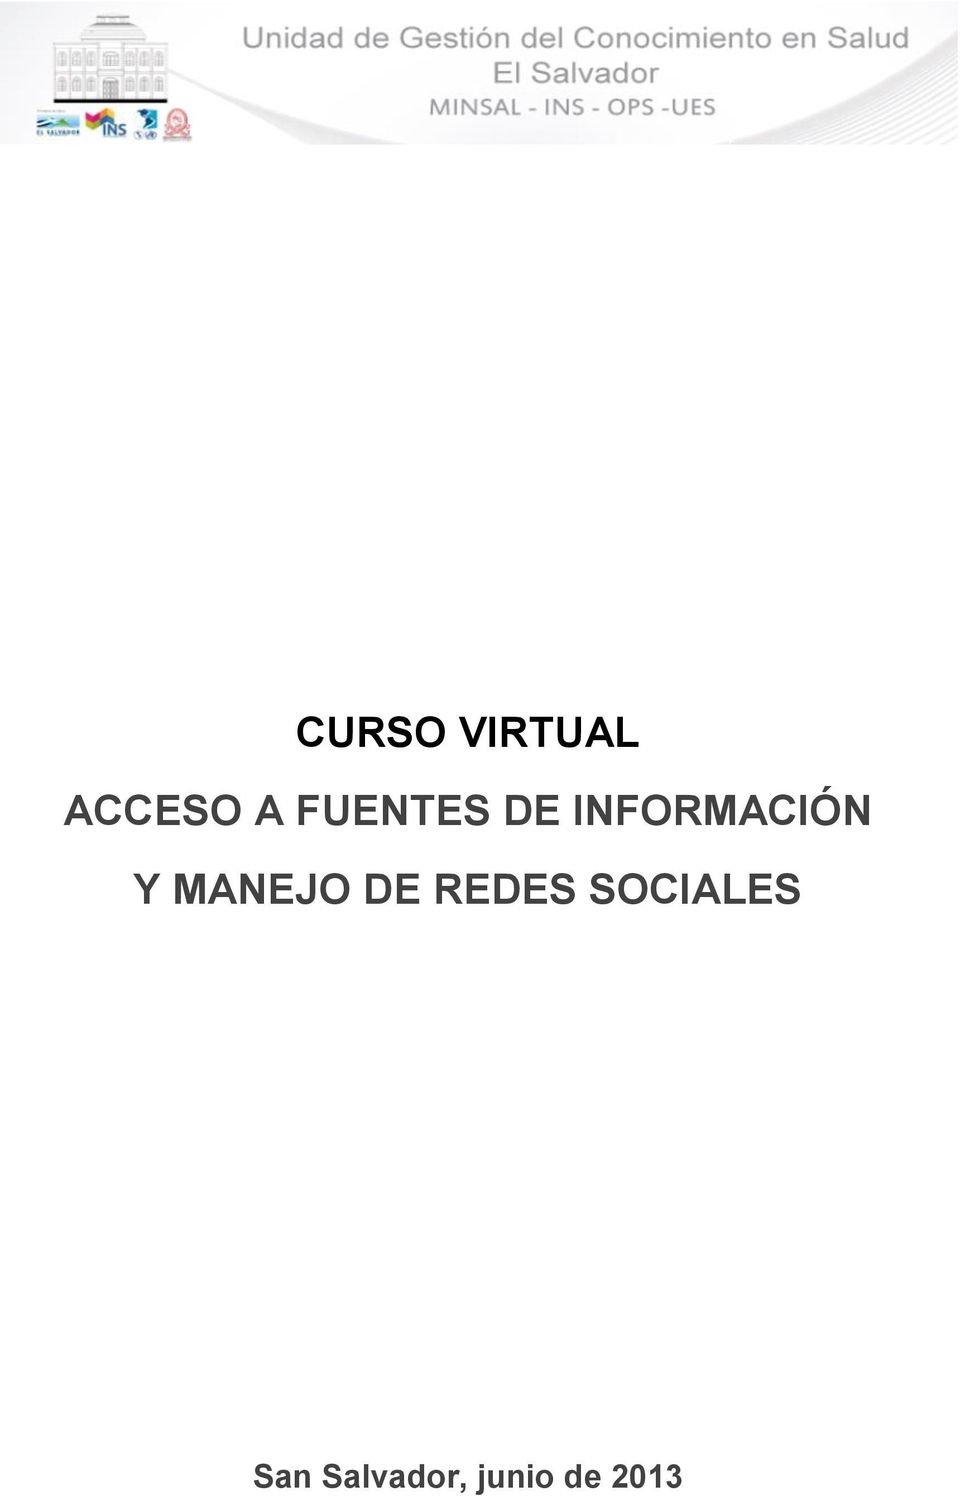 MANEJO DE REDES SOCIALES